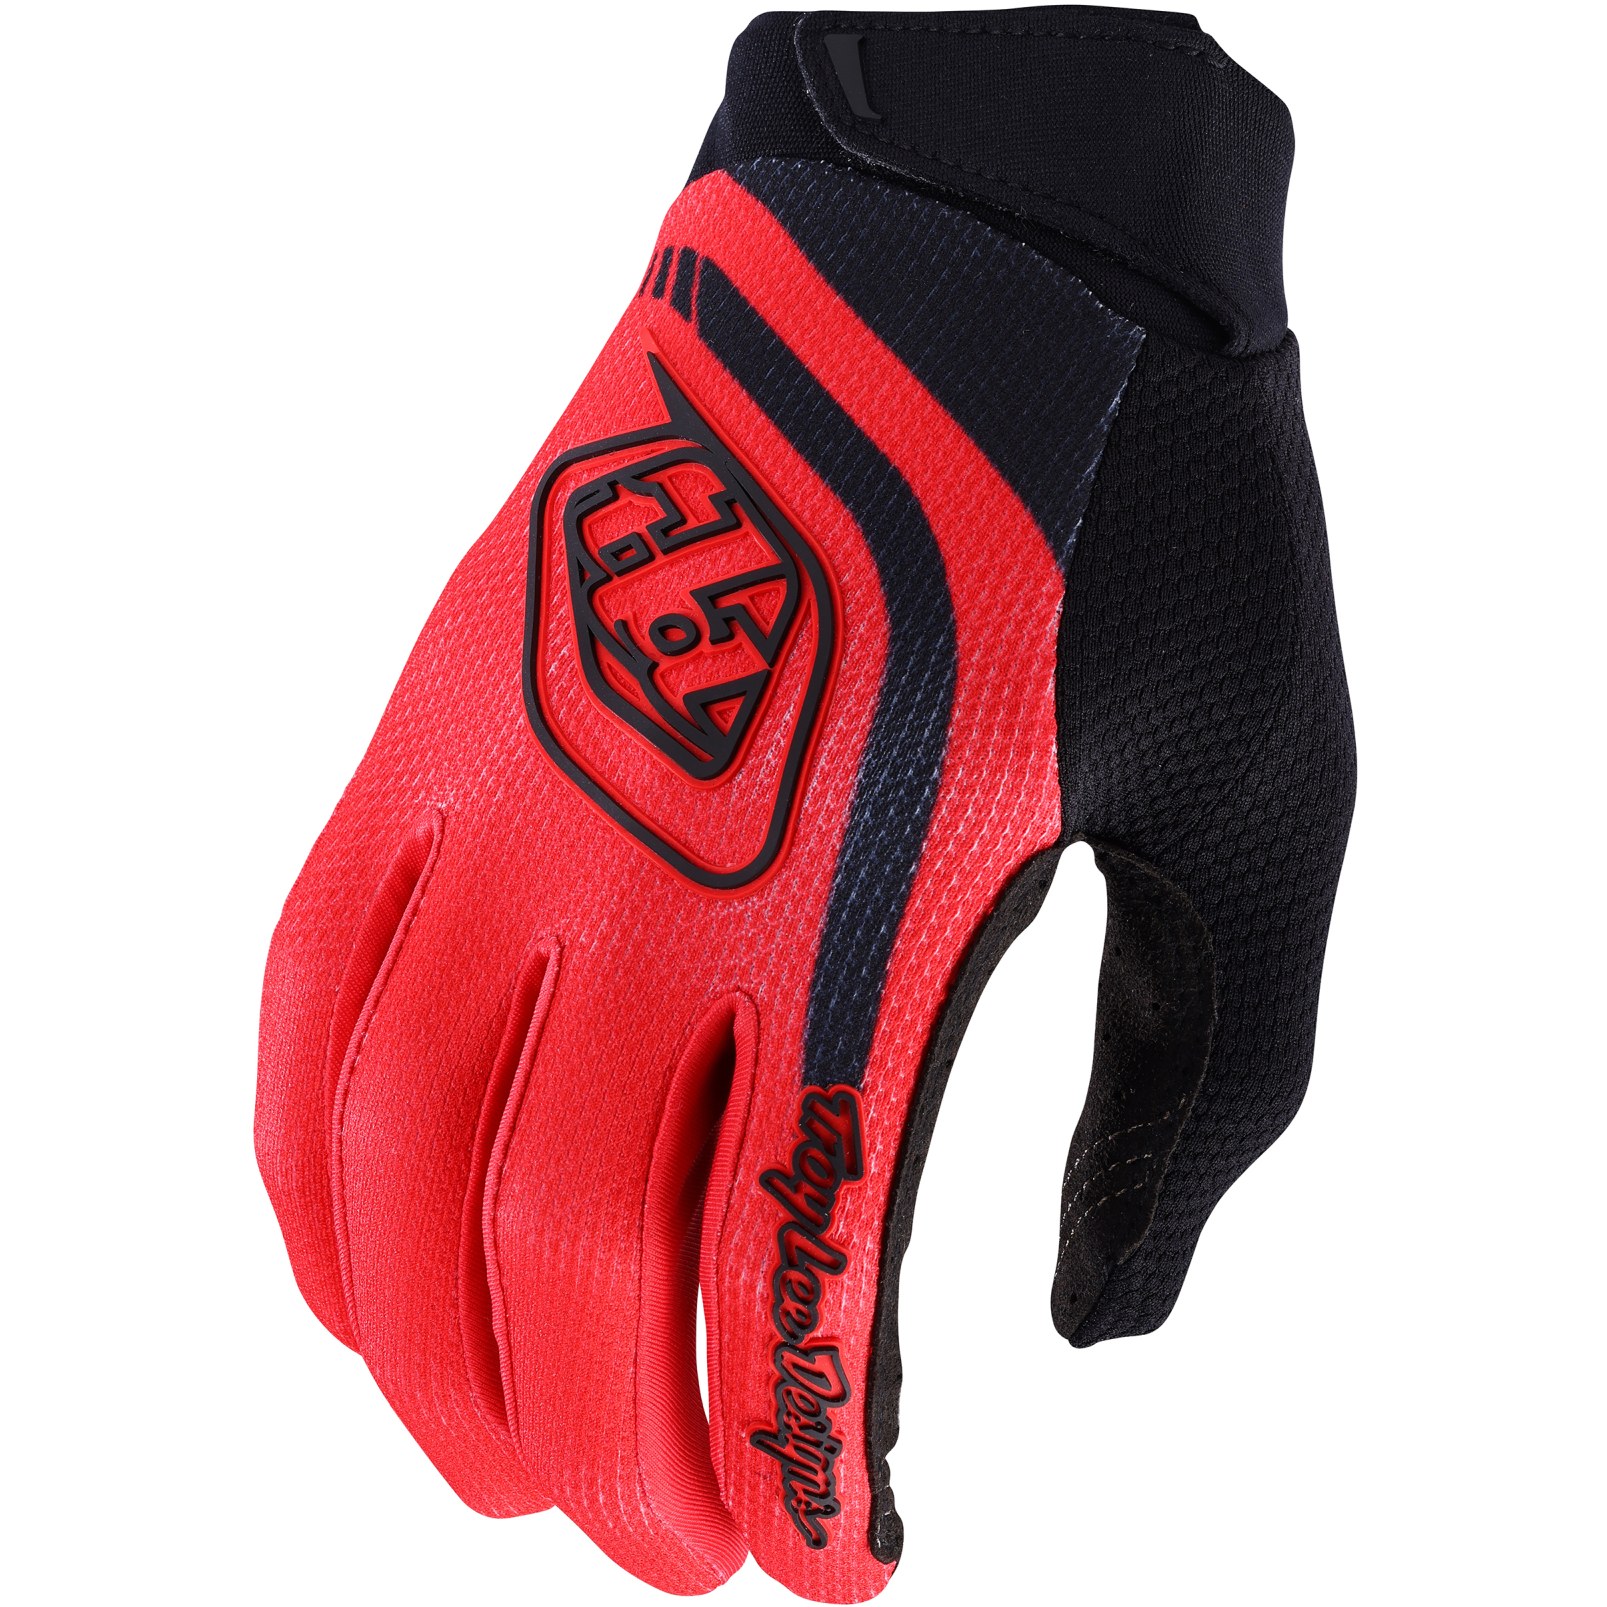 Productfoto van Troy Lee Designs GP Pro Handschoenen - Solid Red